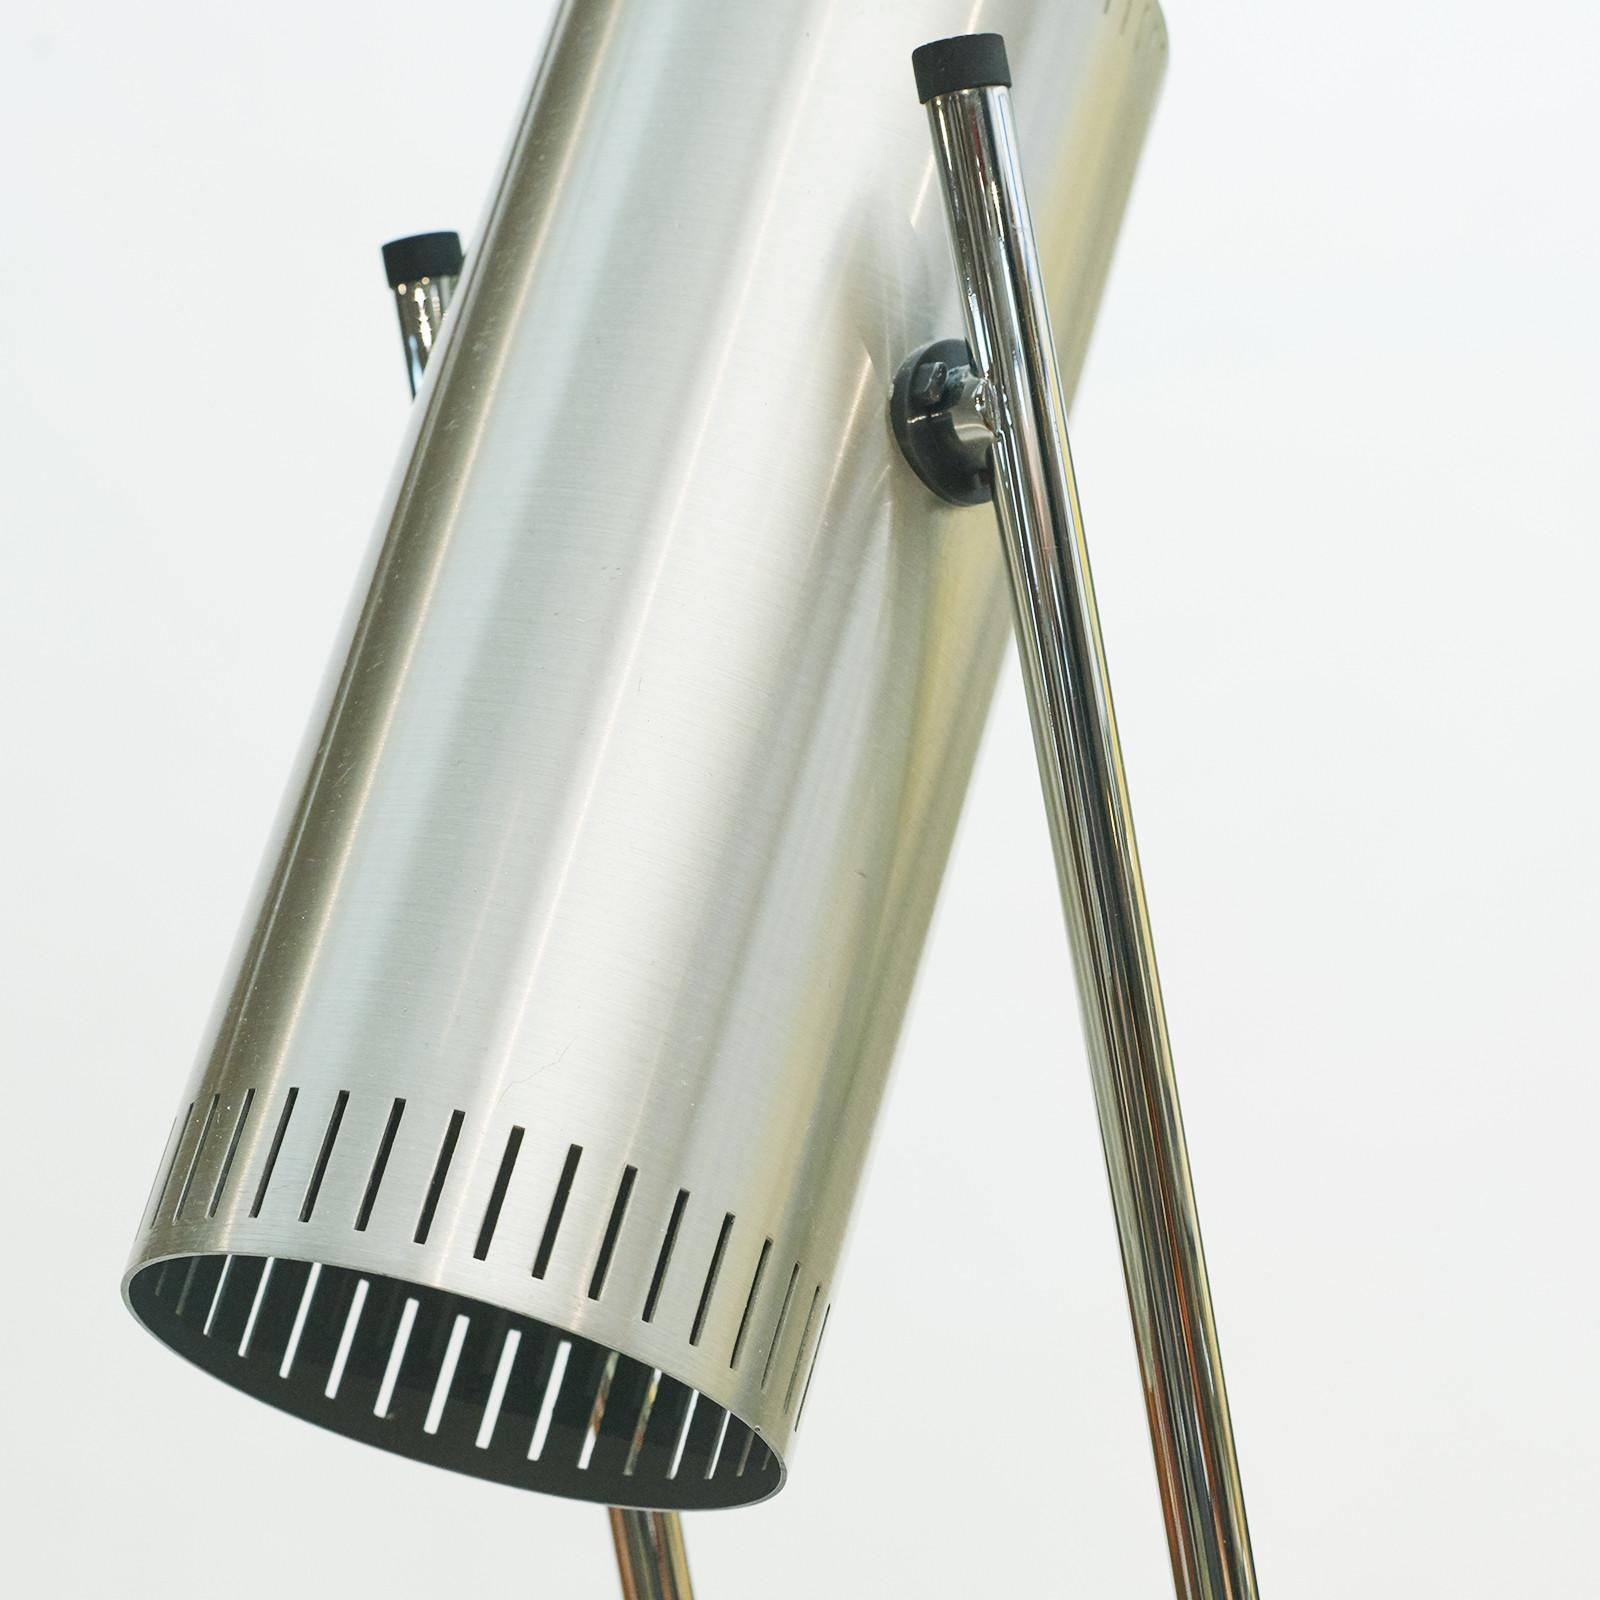 Danish Trombone Vintage Aluminum Table Lamp by Jo Hammerborg, Fog & Morup